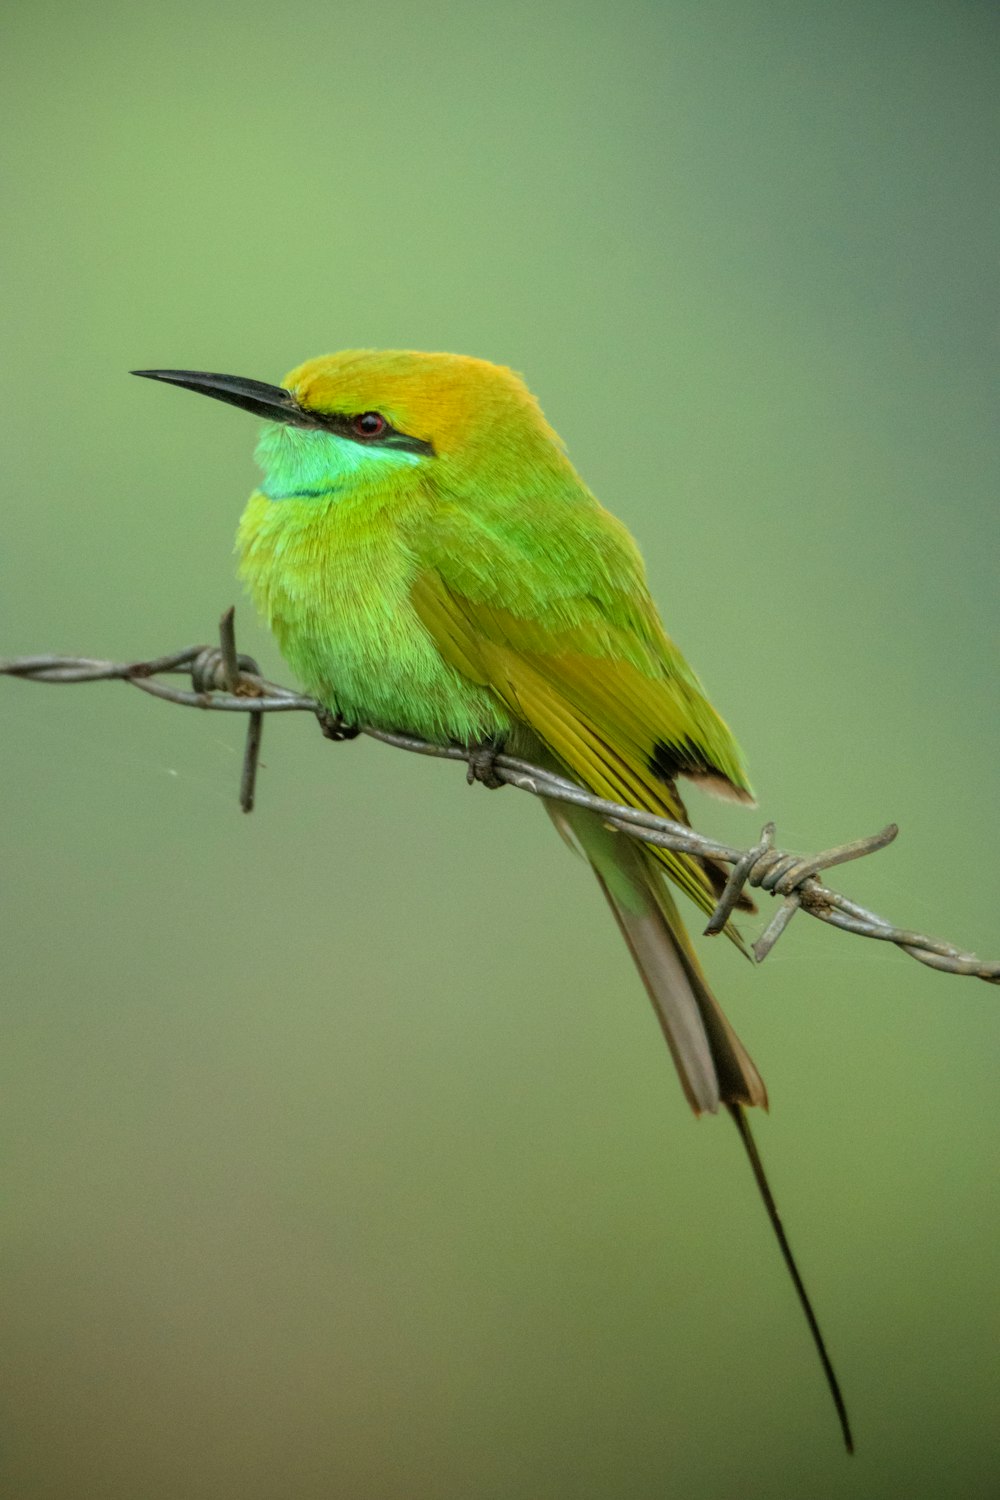 Ein grün-gelber Vogel sitzt auf einem Stacheldraht